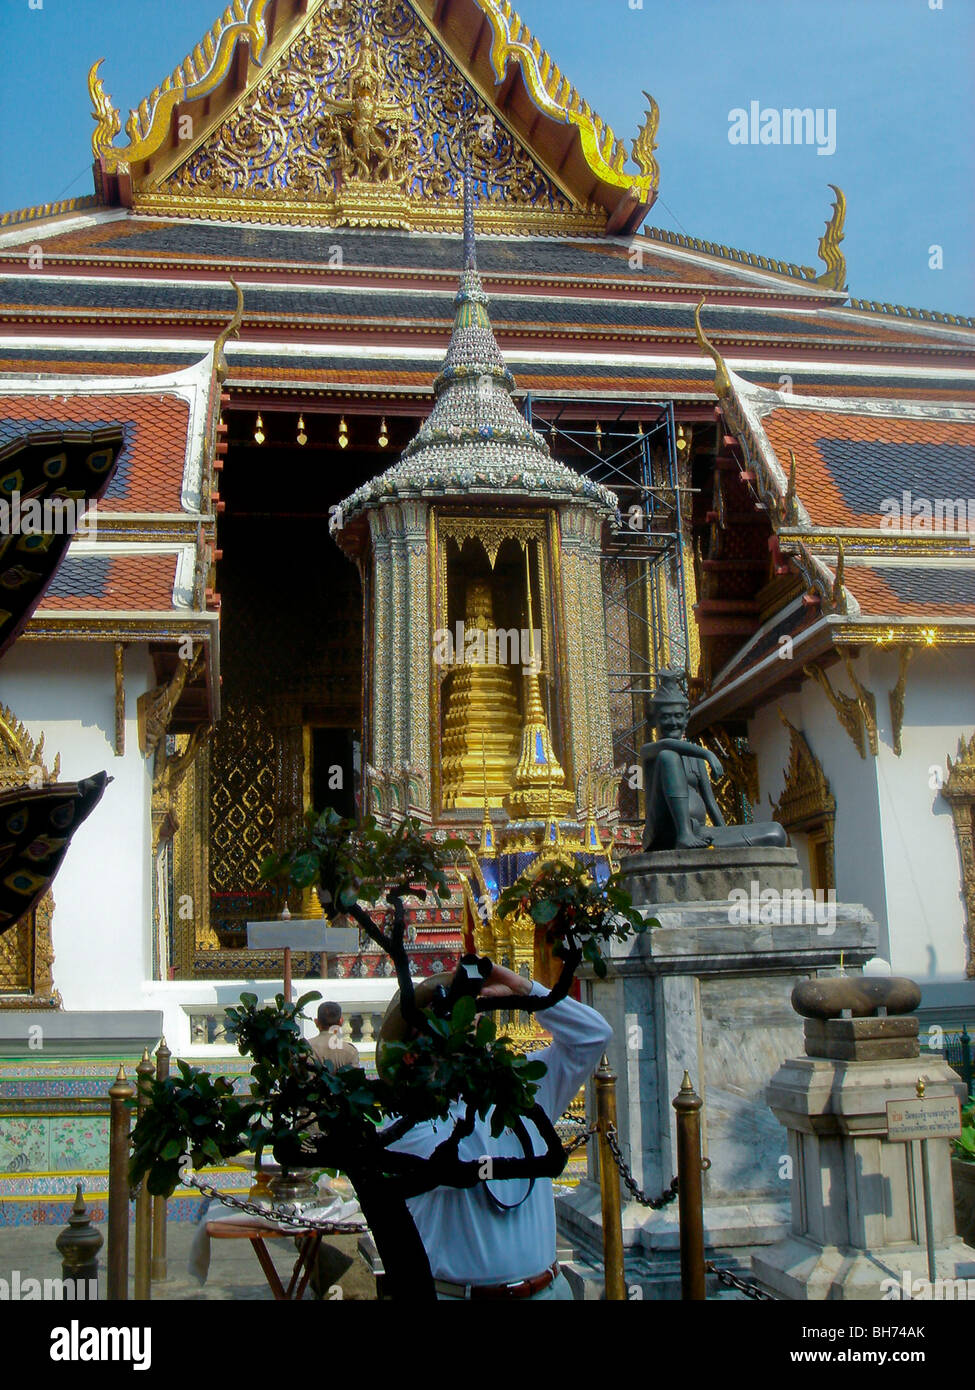 Tailandia, turistas que visitan el antiguo templo budista tradicional, Chiang Mai Foto de stock